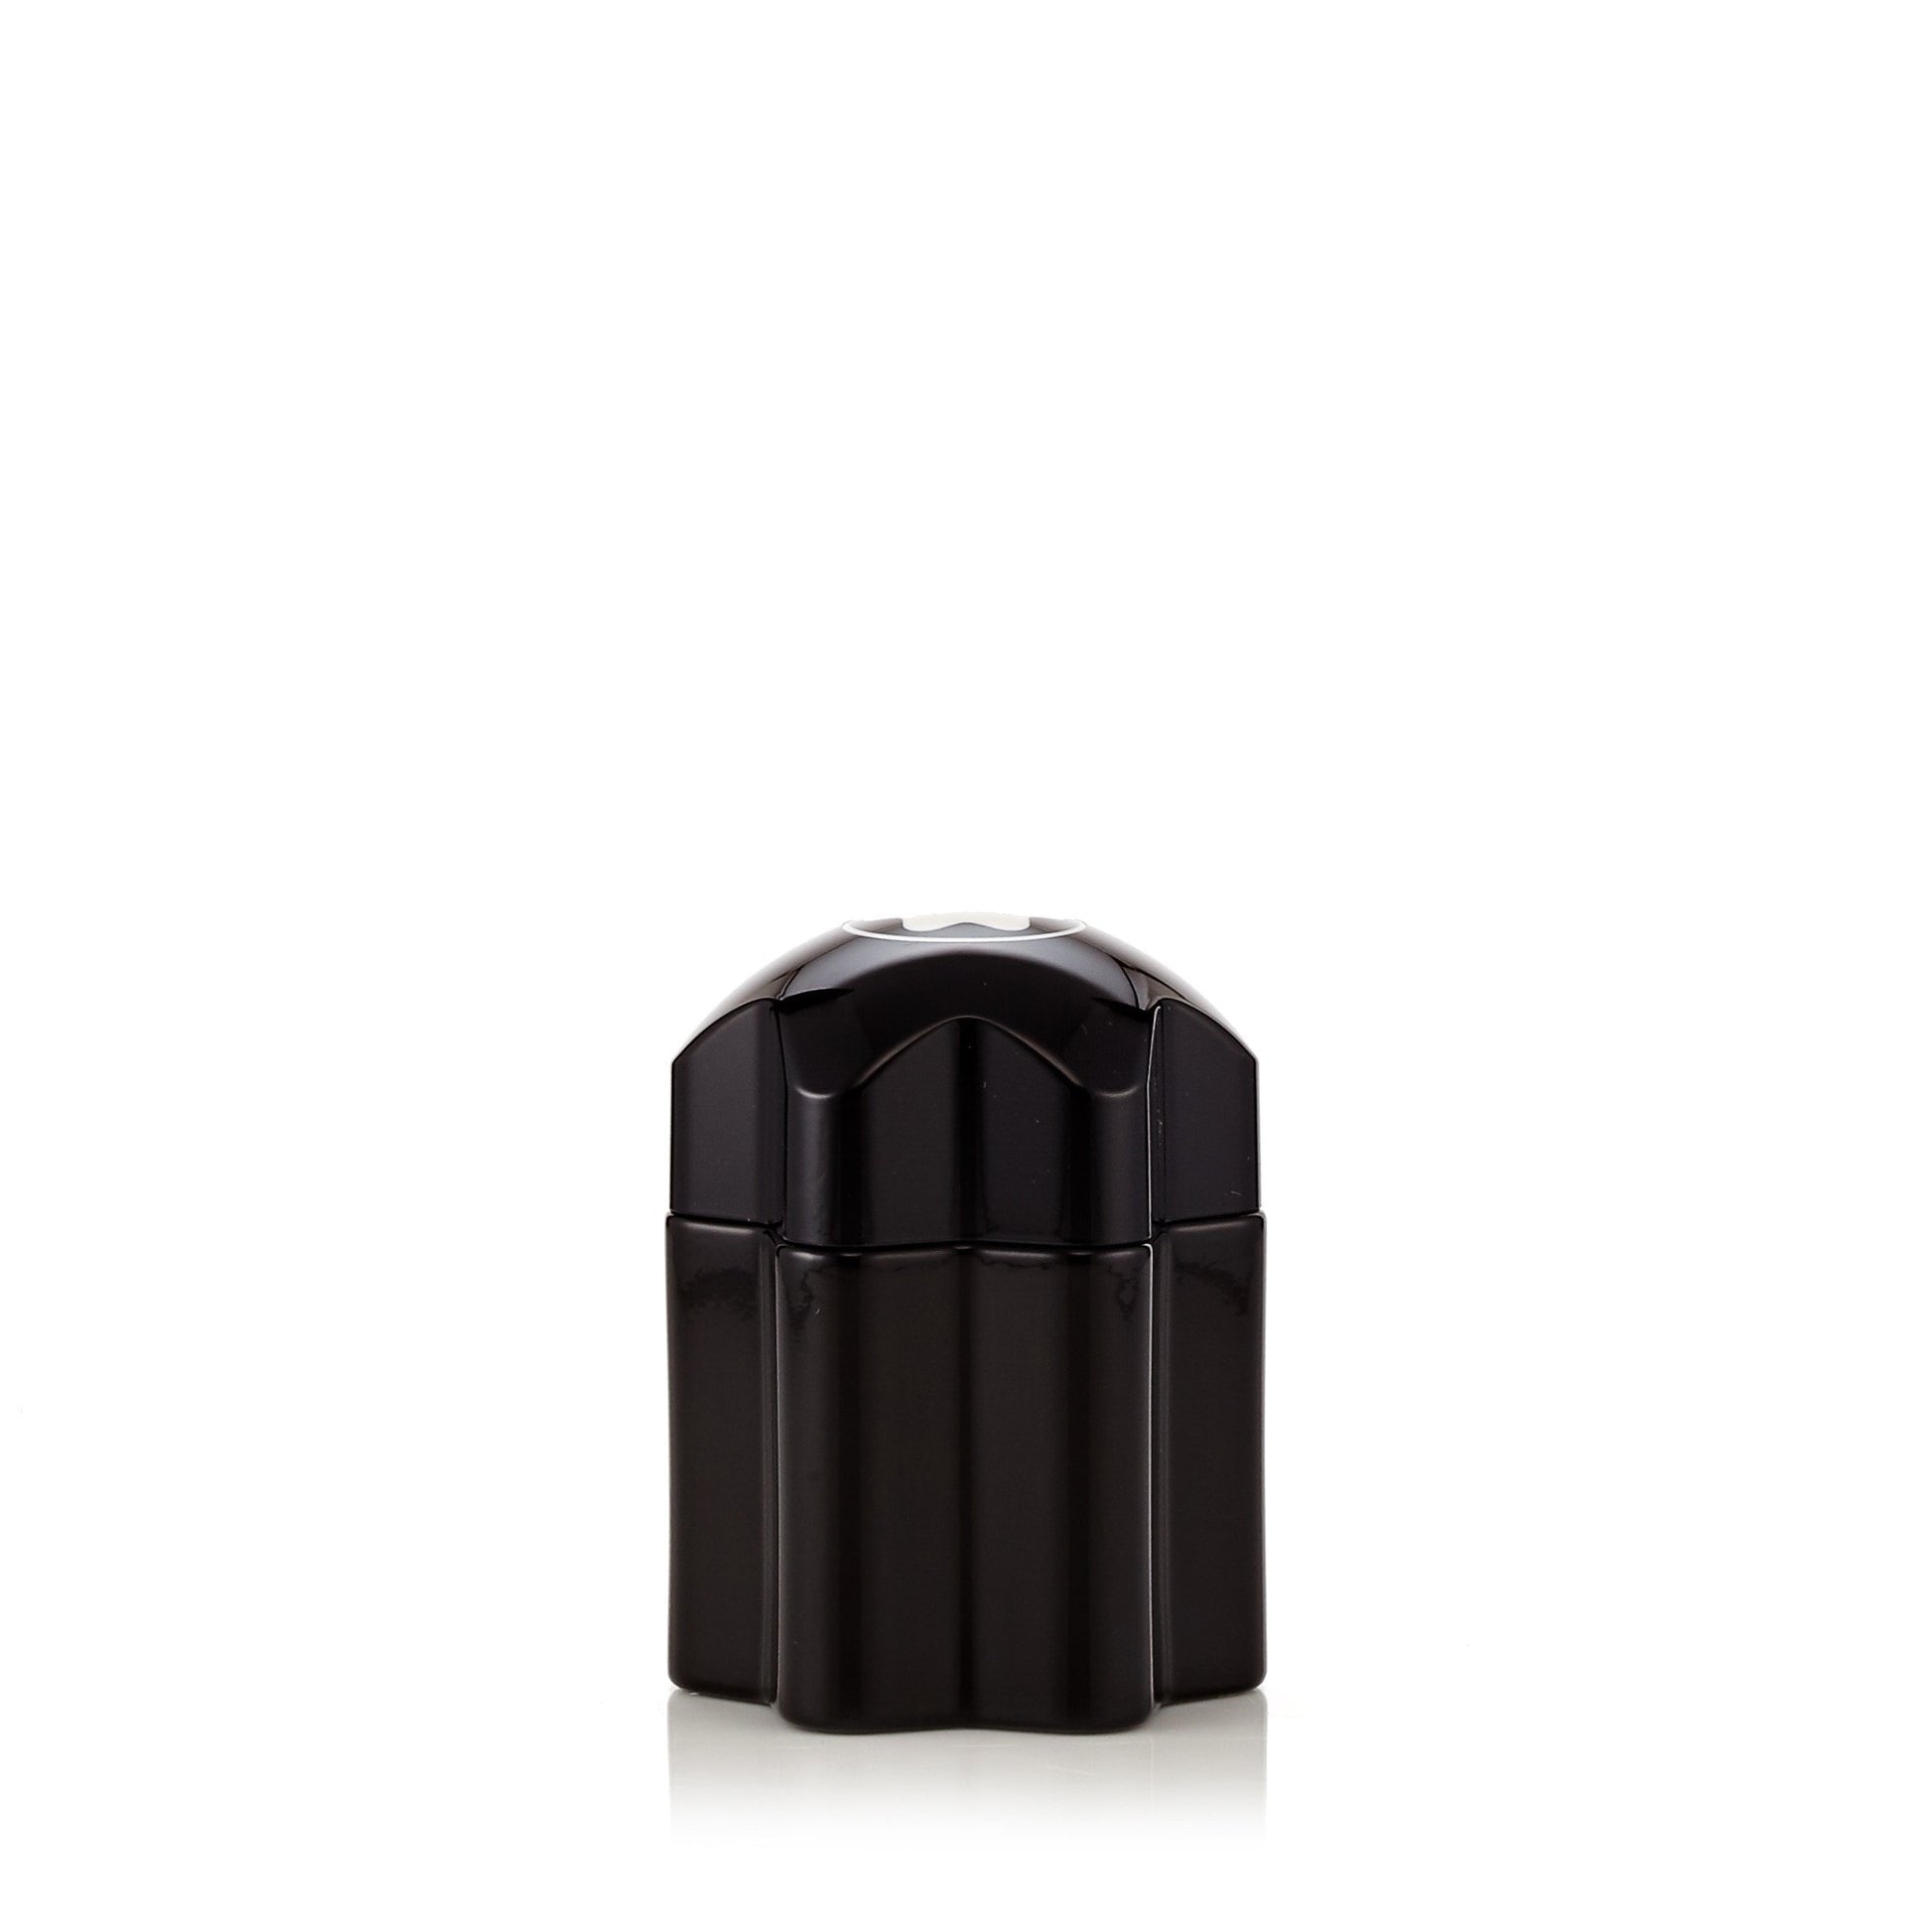 Emblem Eau de Toilette Spray for Men by Montblanc 2.0 oz. Click to open in modal